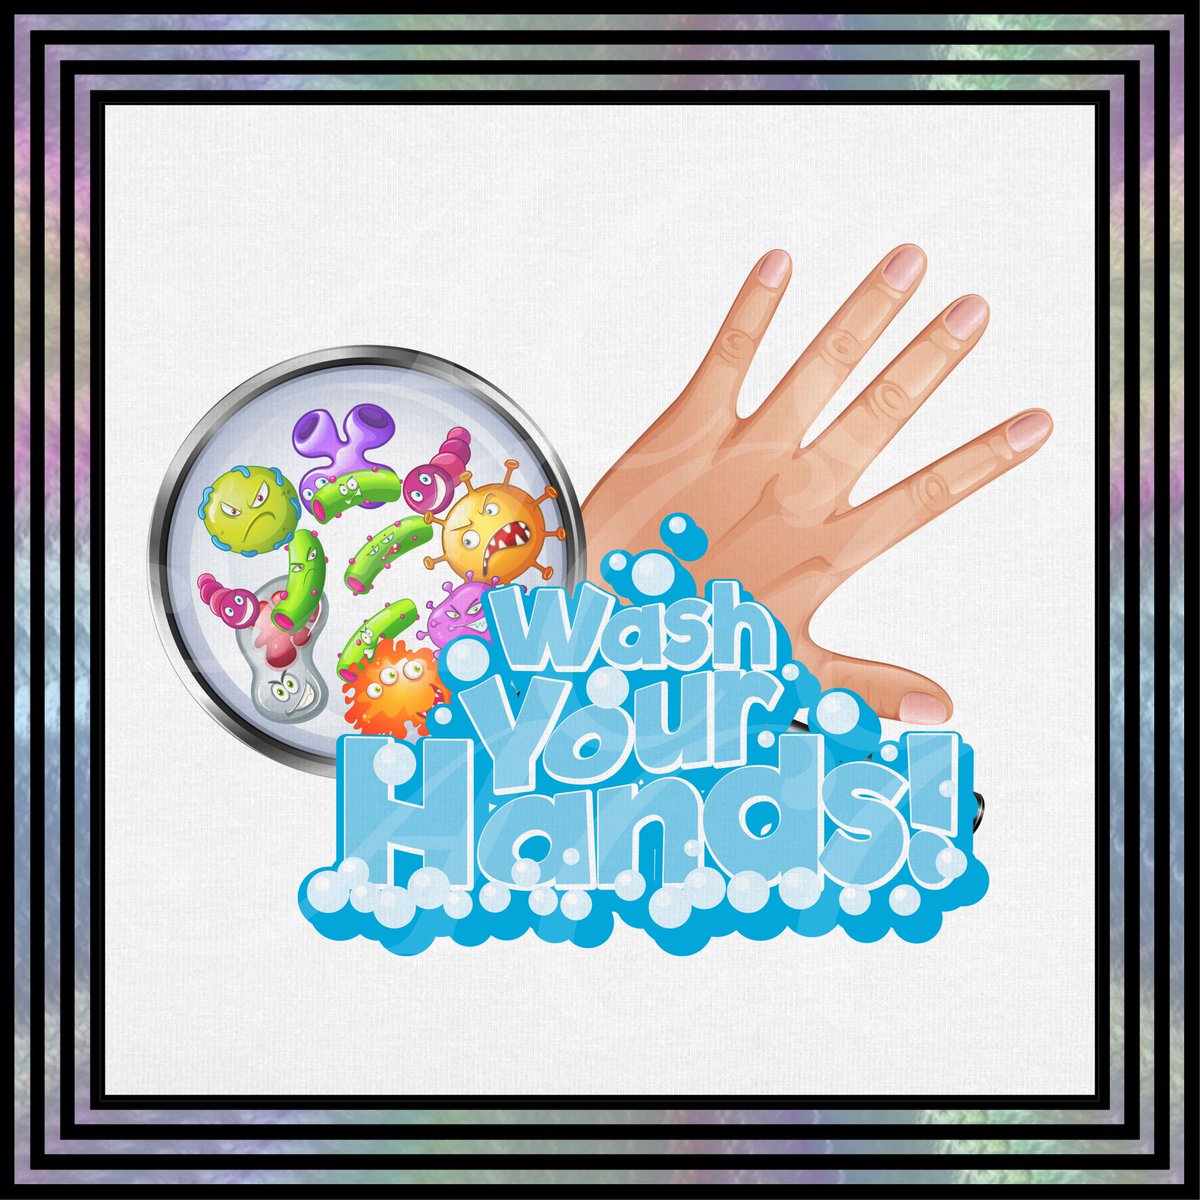 It's Global Handwashing Day!
#GlobalHandwashingDay